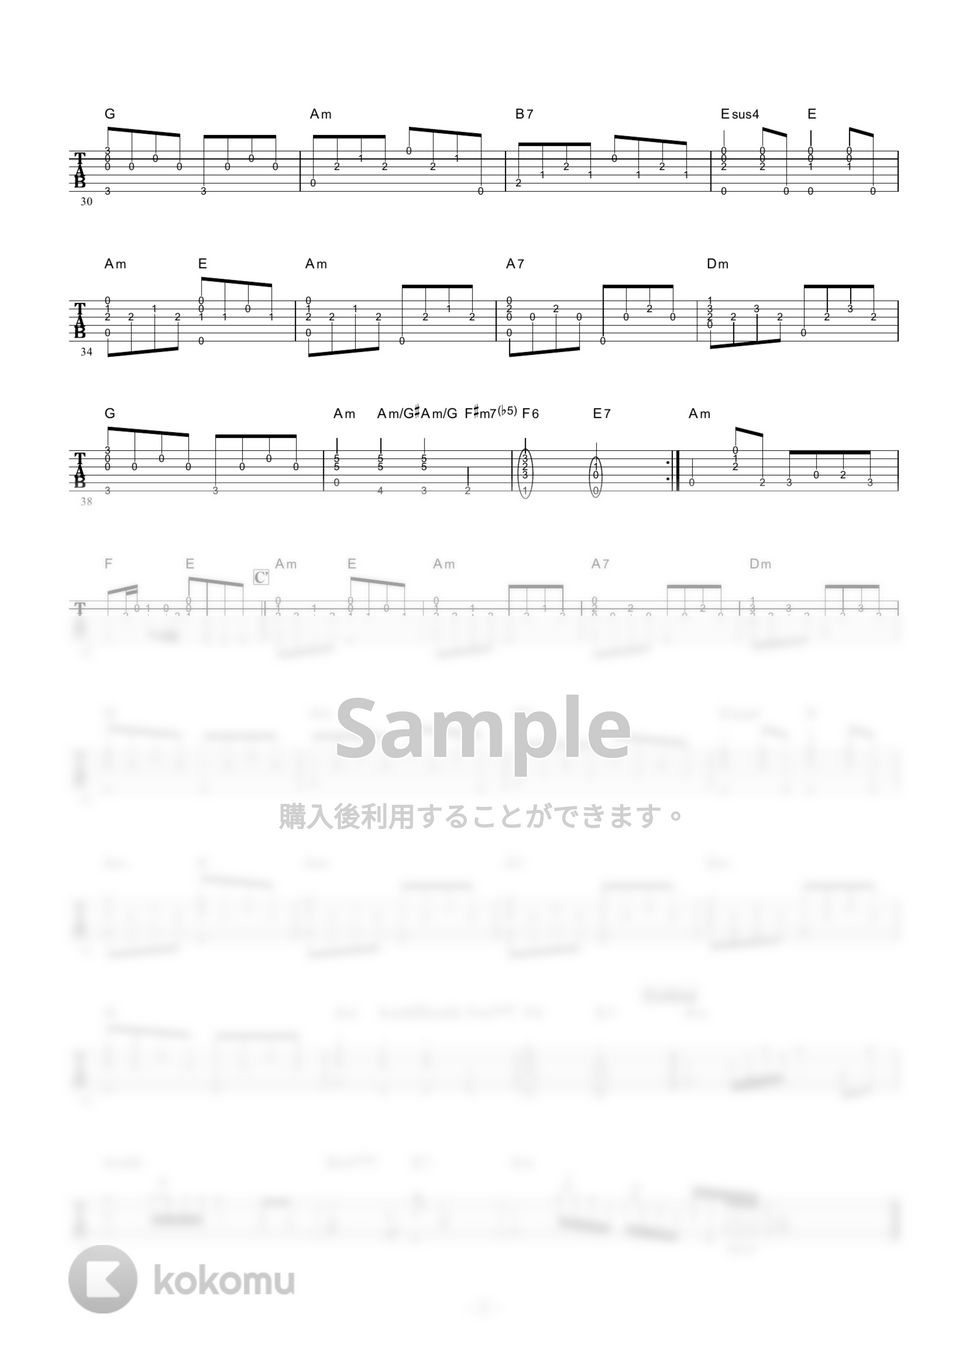 秋元順子 - 愛のままで・・・ (ギター伴奏/イントロ・間奏ソロギター) by 伴奏屋TAB譜